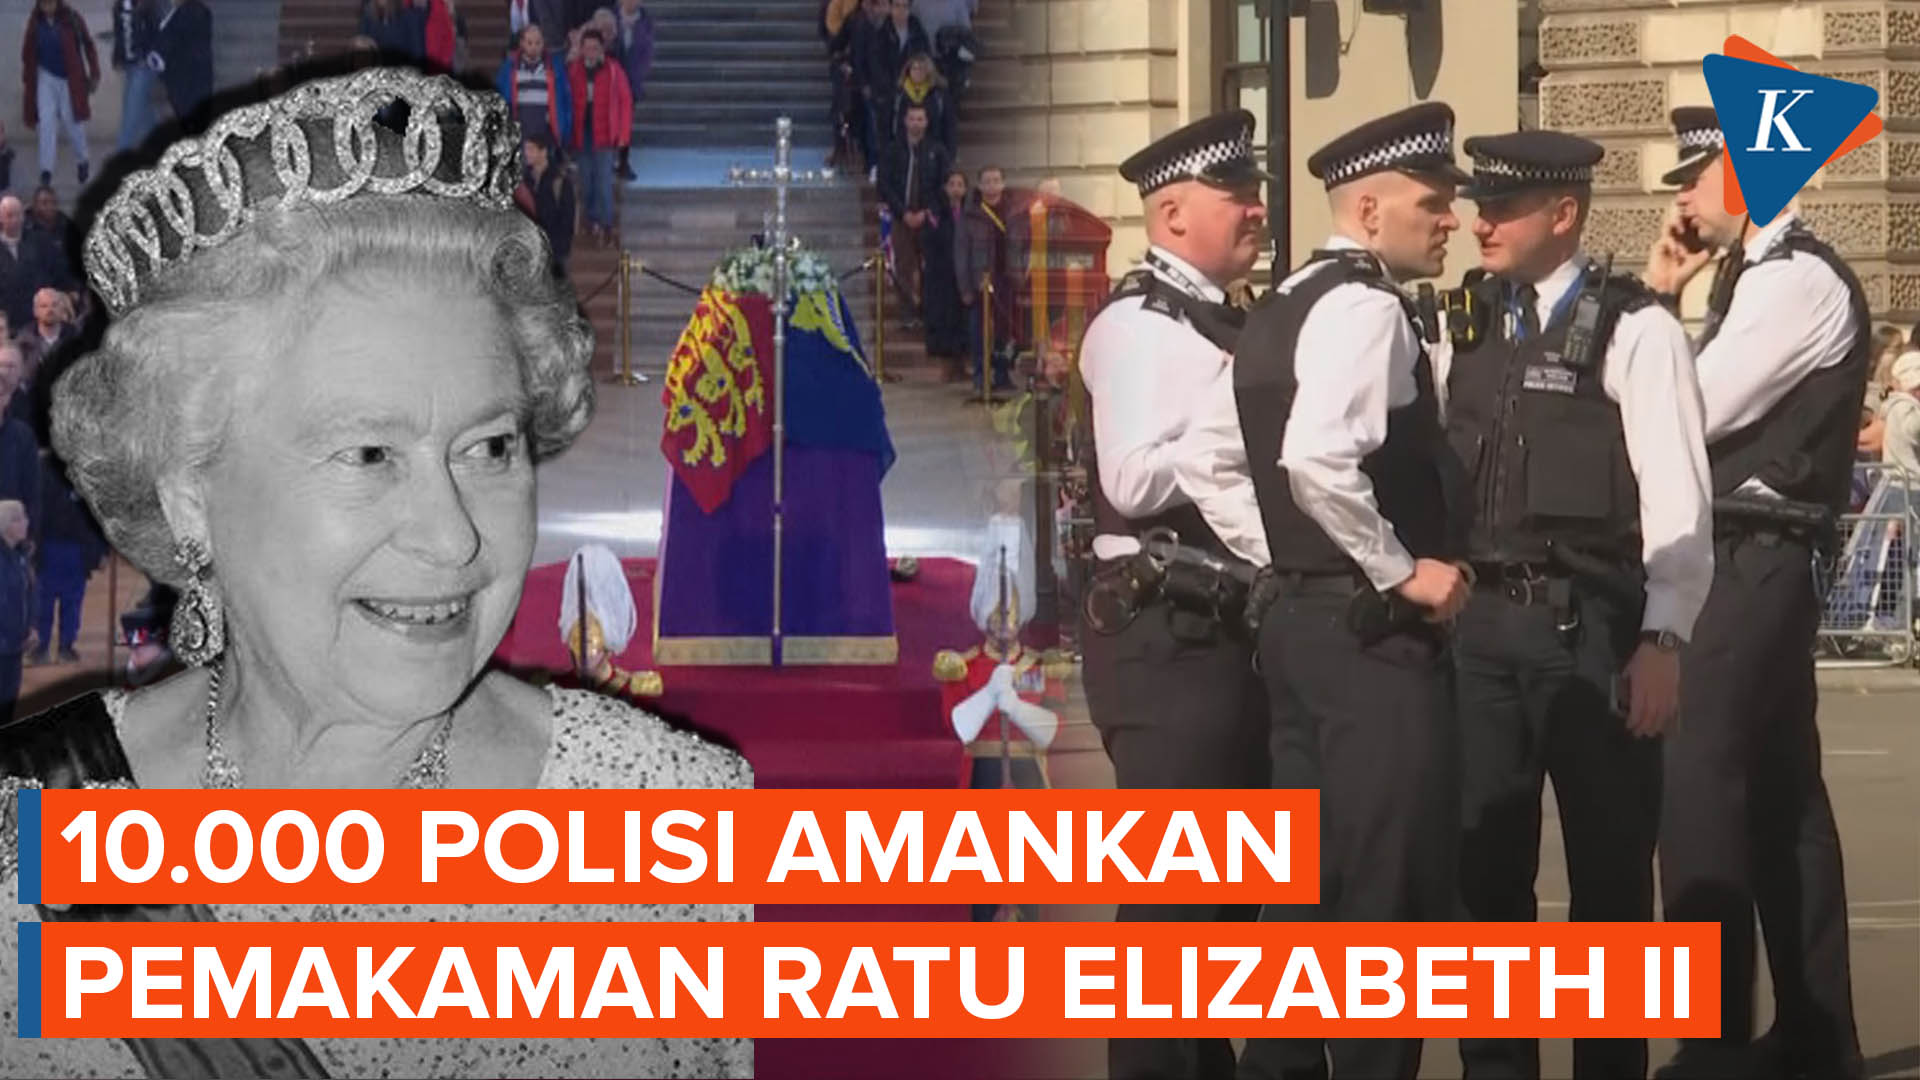 Pemakaman Ratu Elizabeth II Hari Ini Dijaga Ketat